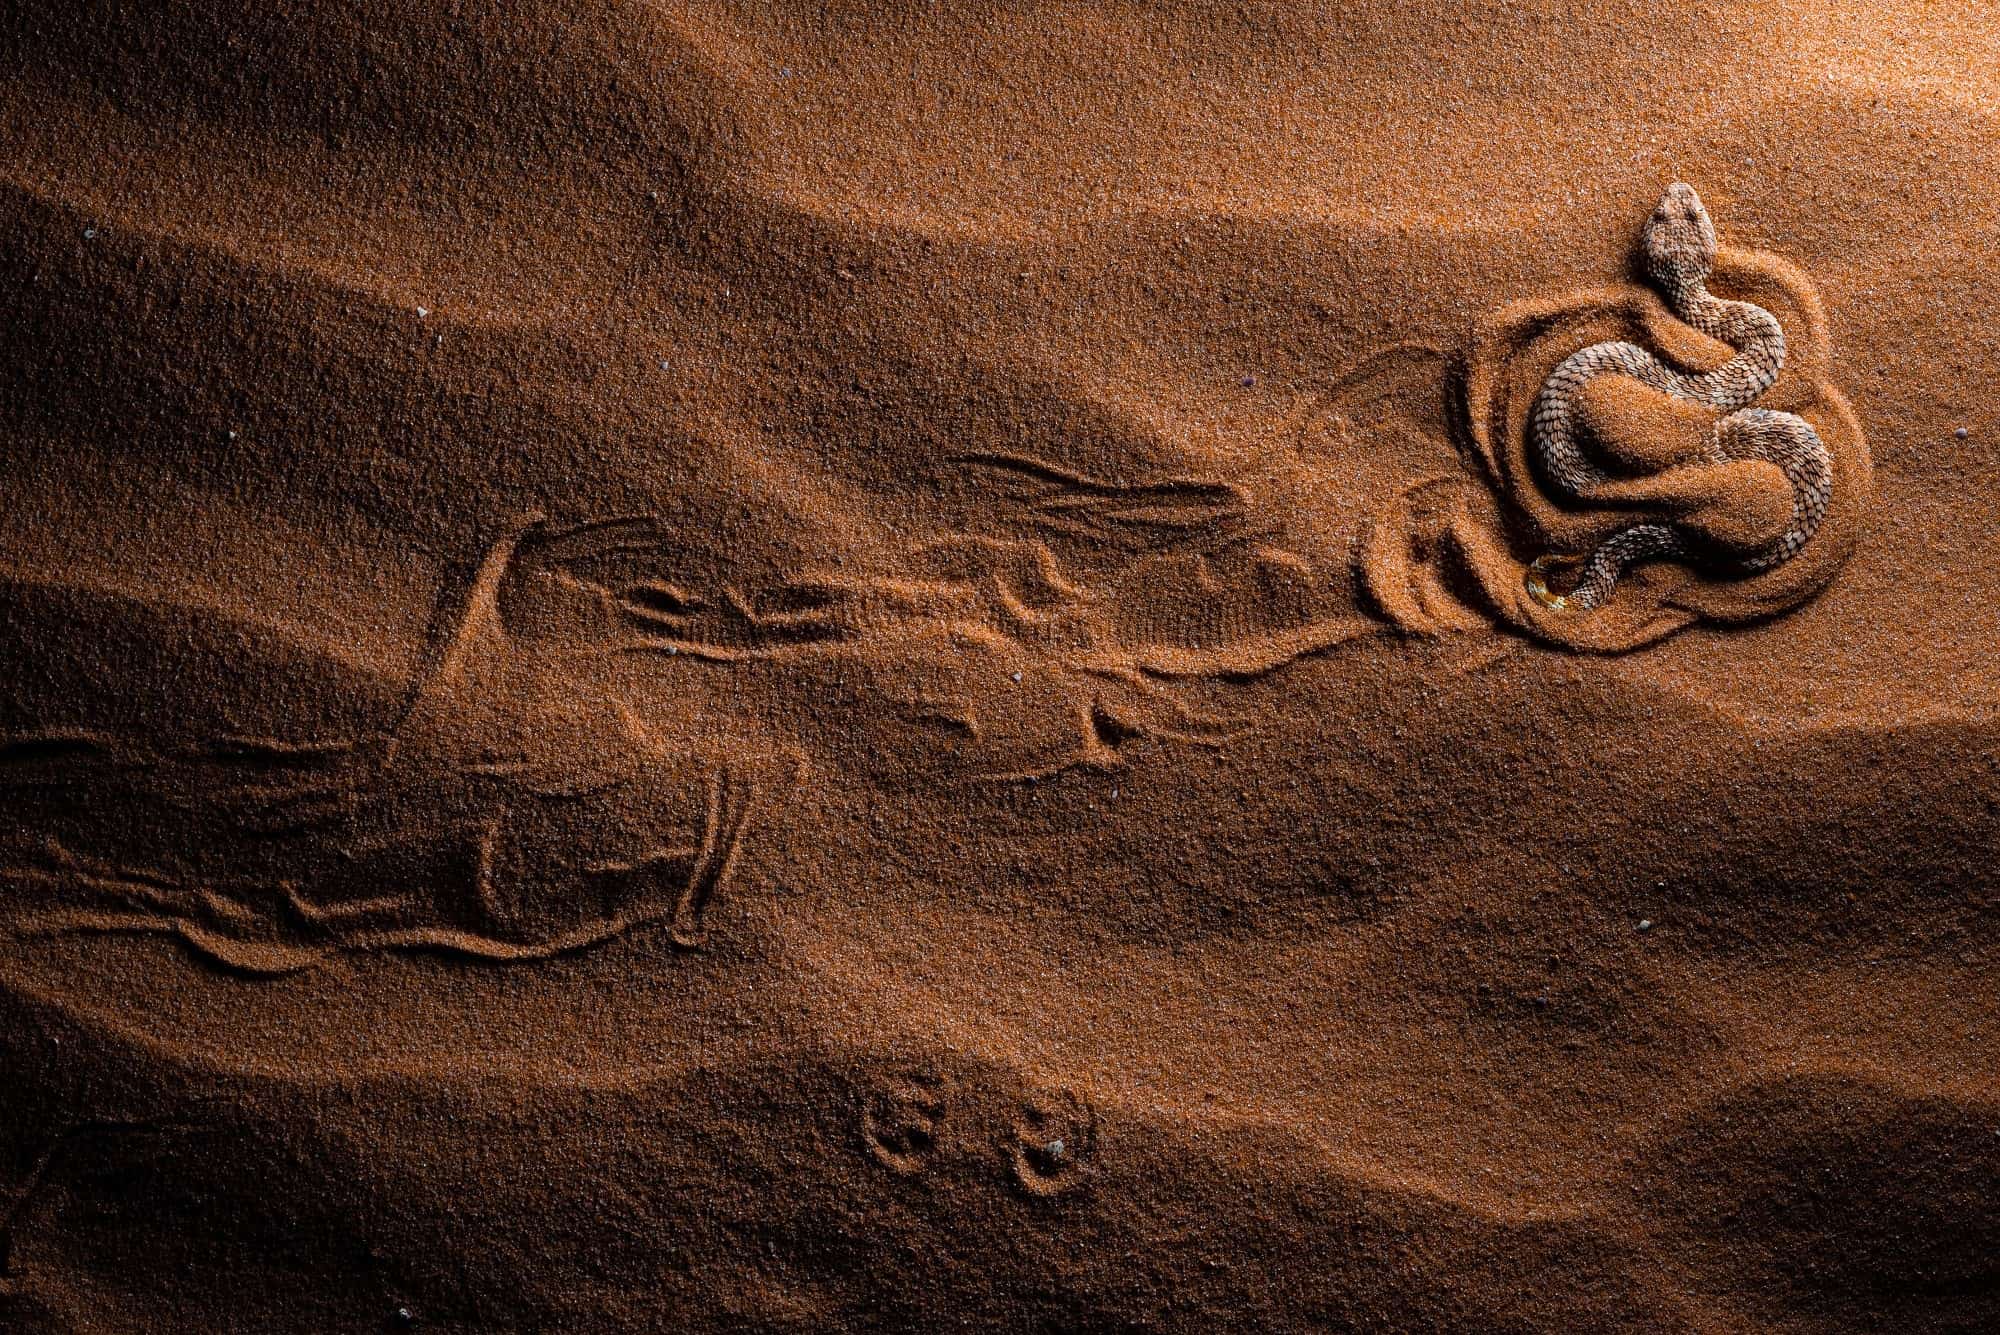 صورة مشاركة في مسابقة التصوير الفوتوغرافي تظهر أفعى رمل الصحراء وهي تحفر مساراً في الرمل في الصحراء.